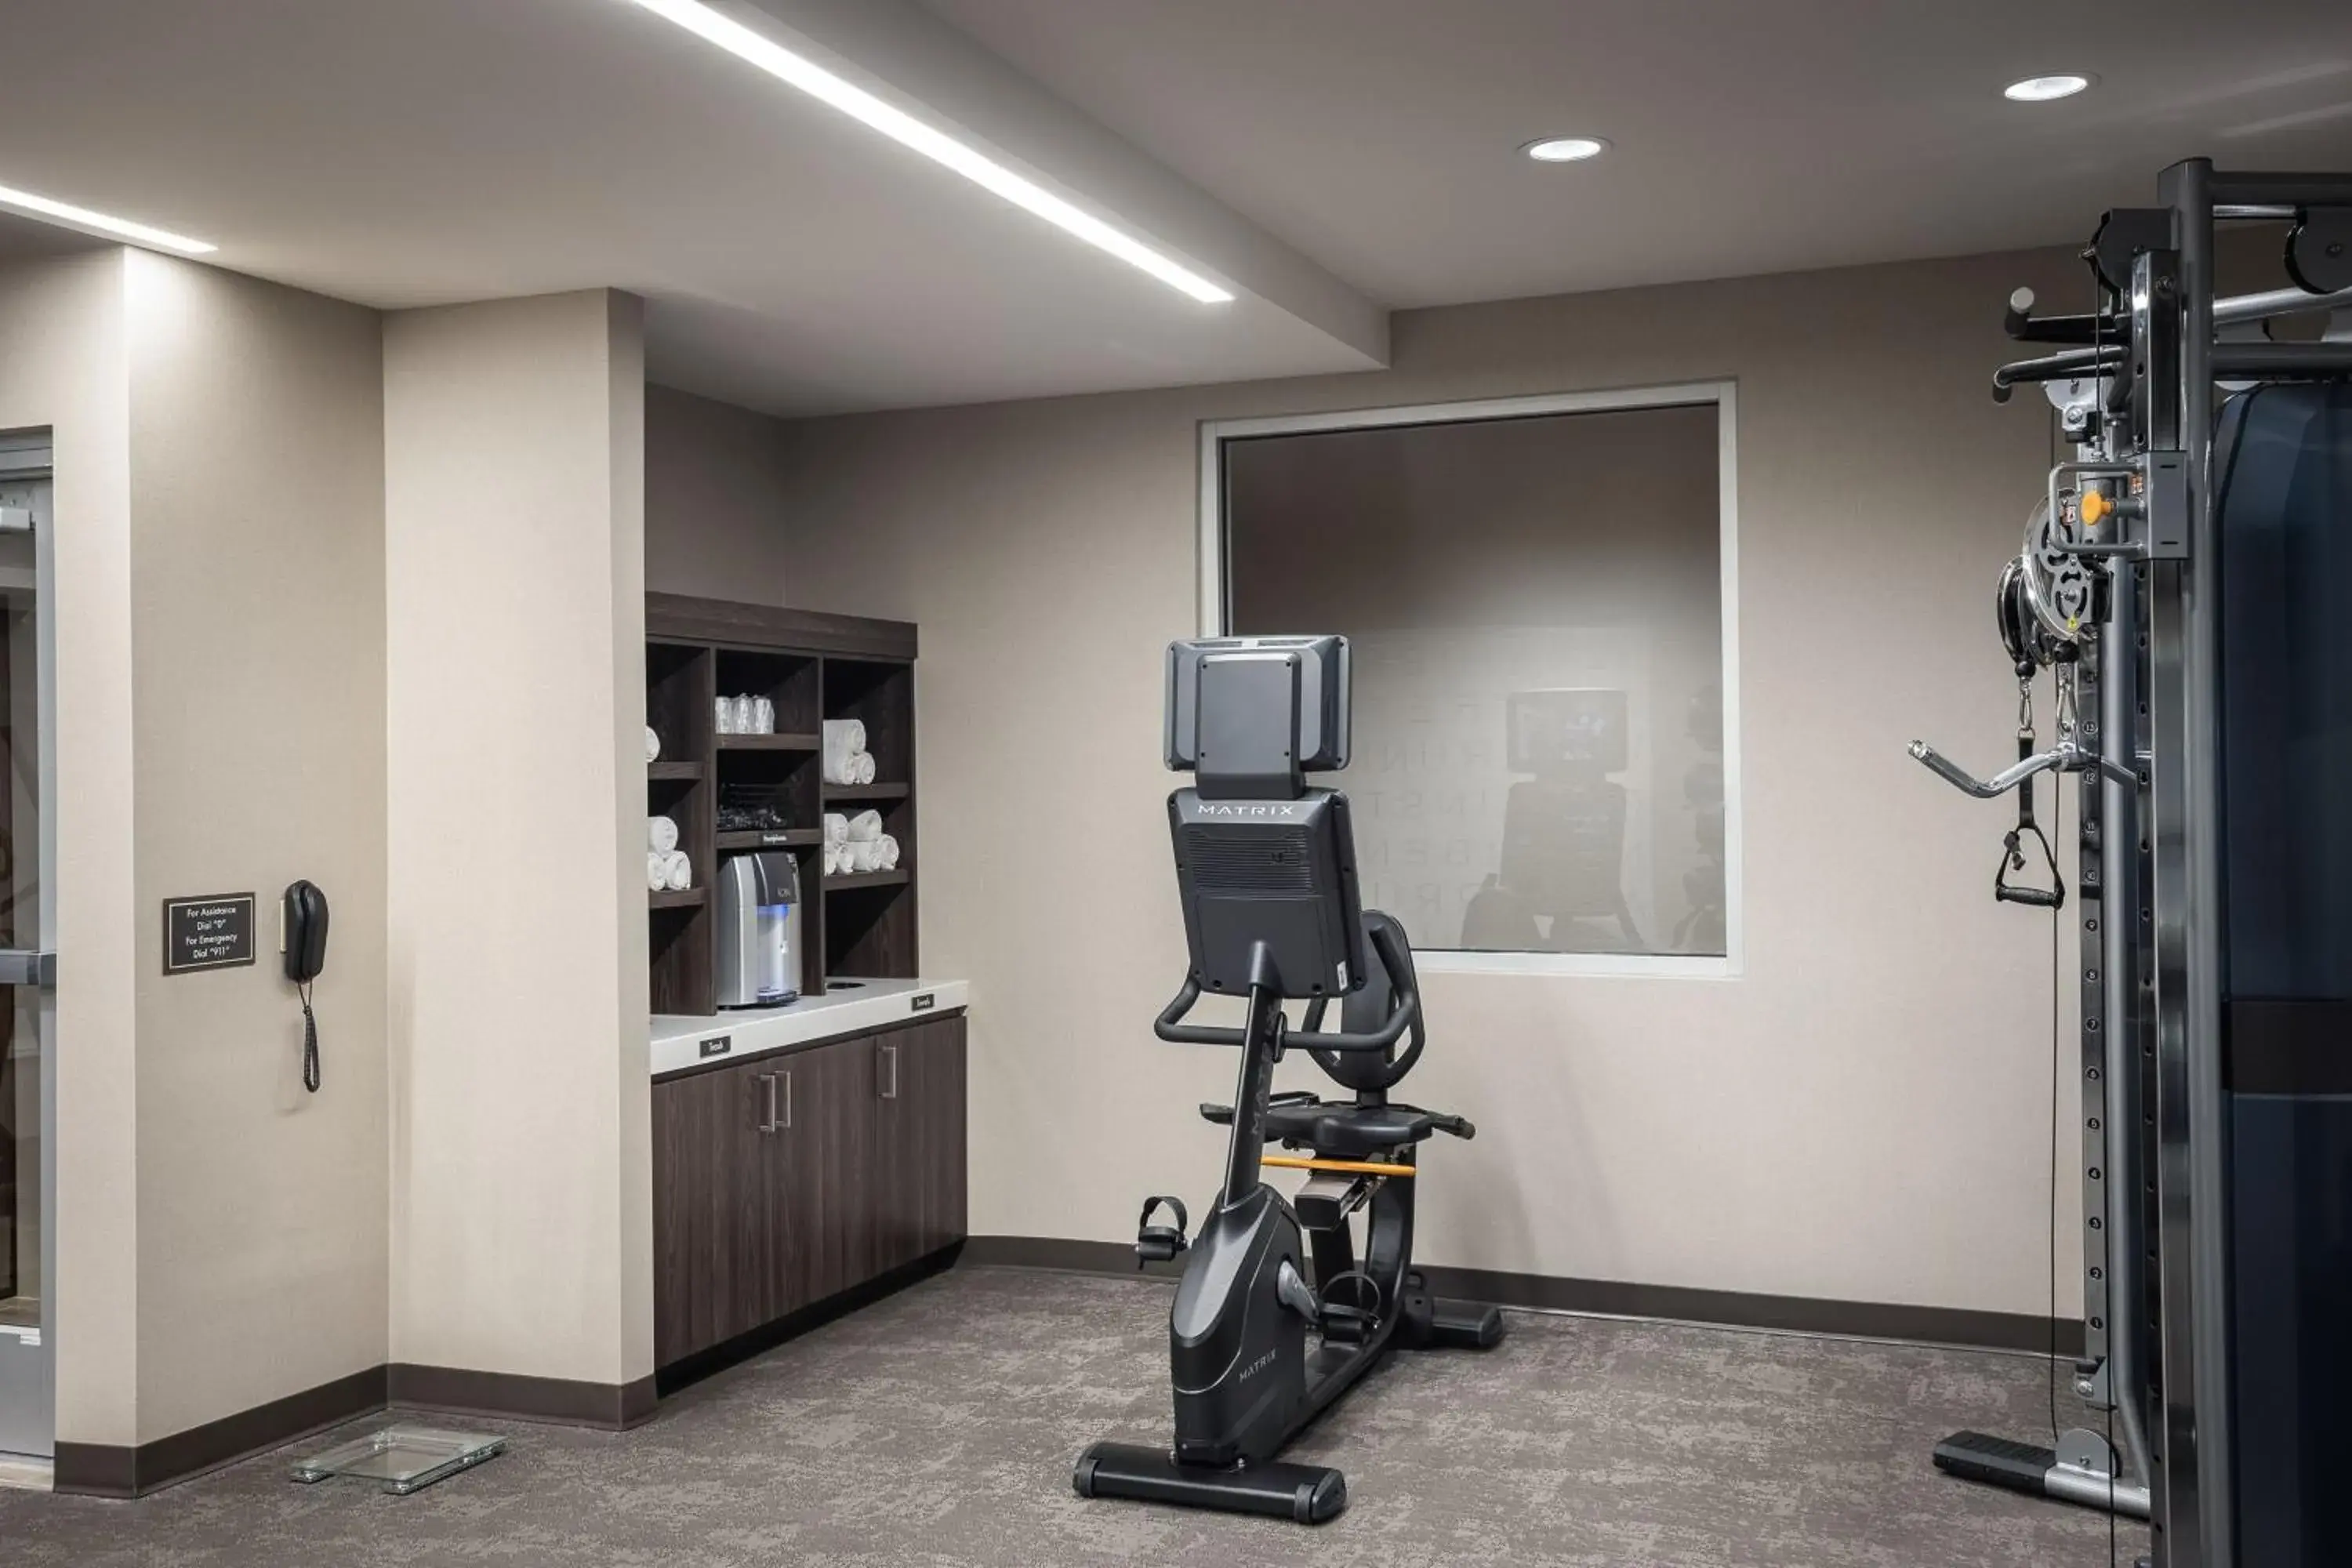 Fitness centre/facilities, Fitness Center/Facilities in Residence Inn by Marriott Denver Aurora